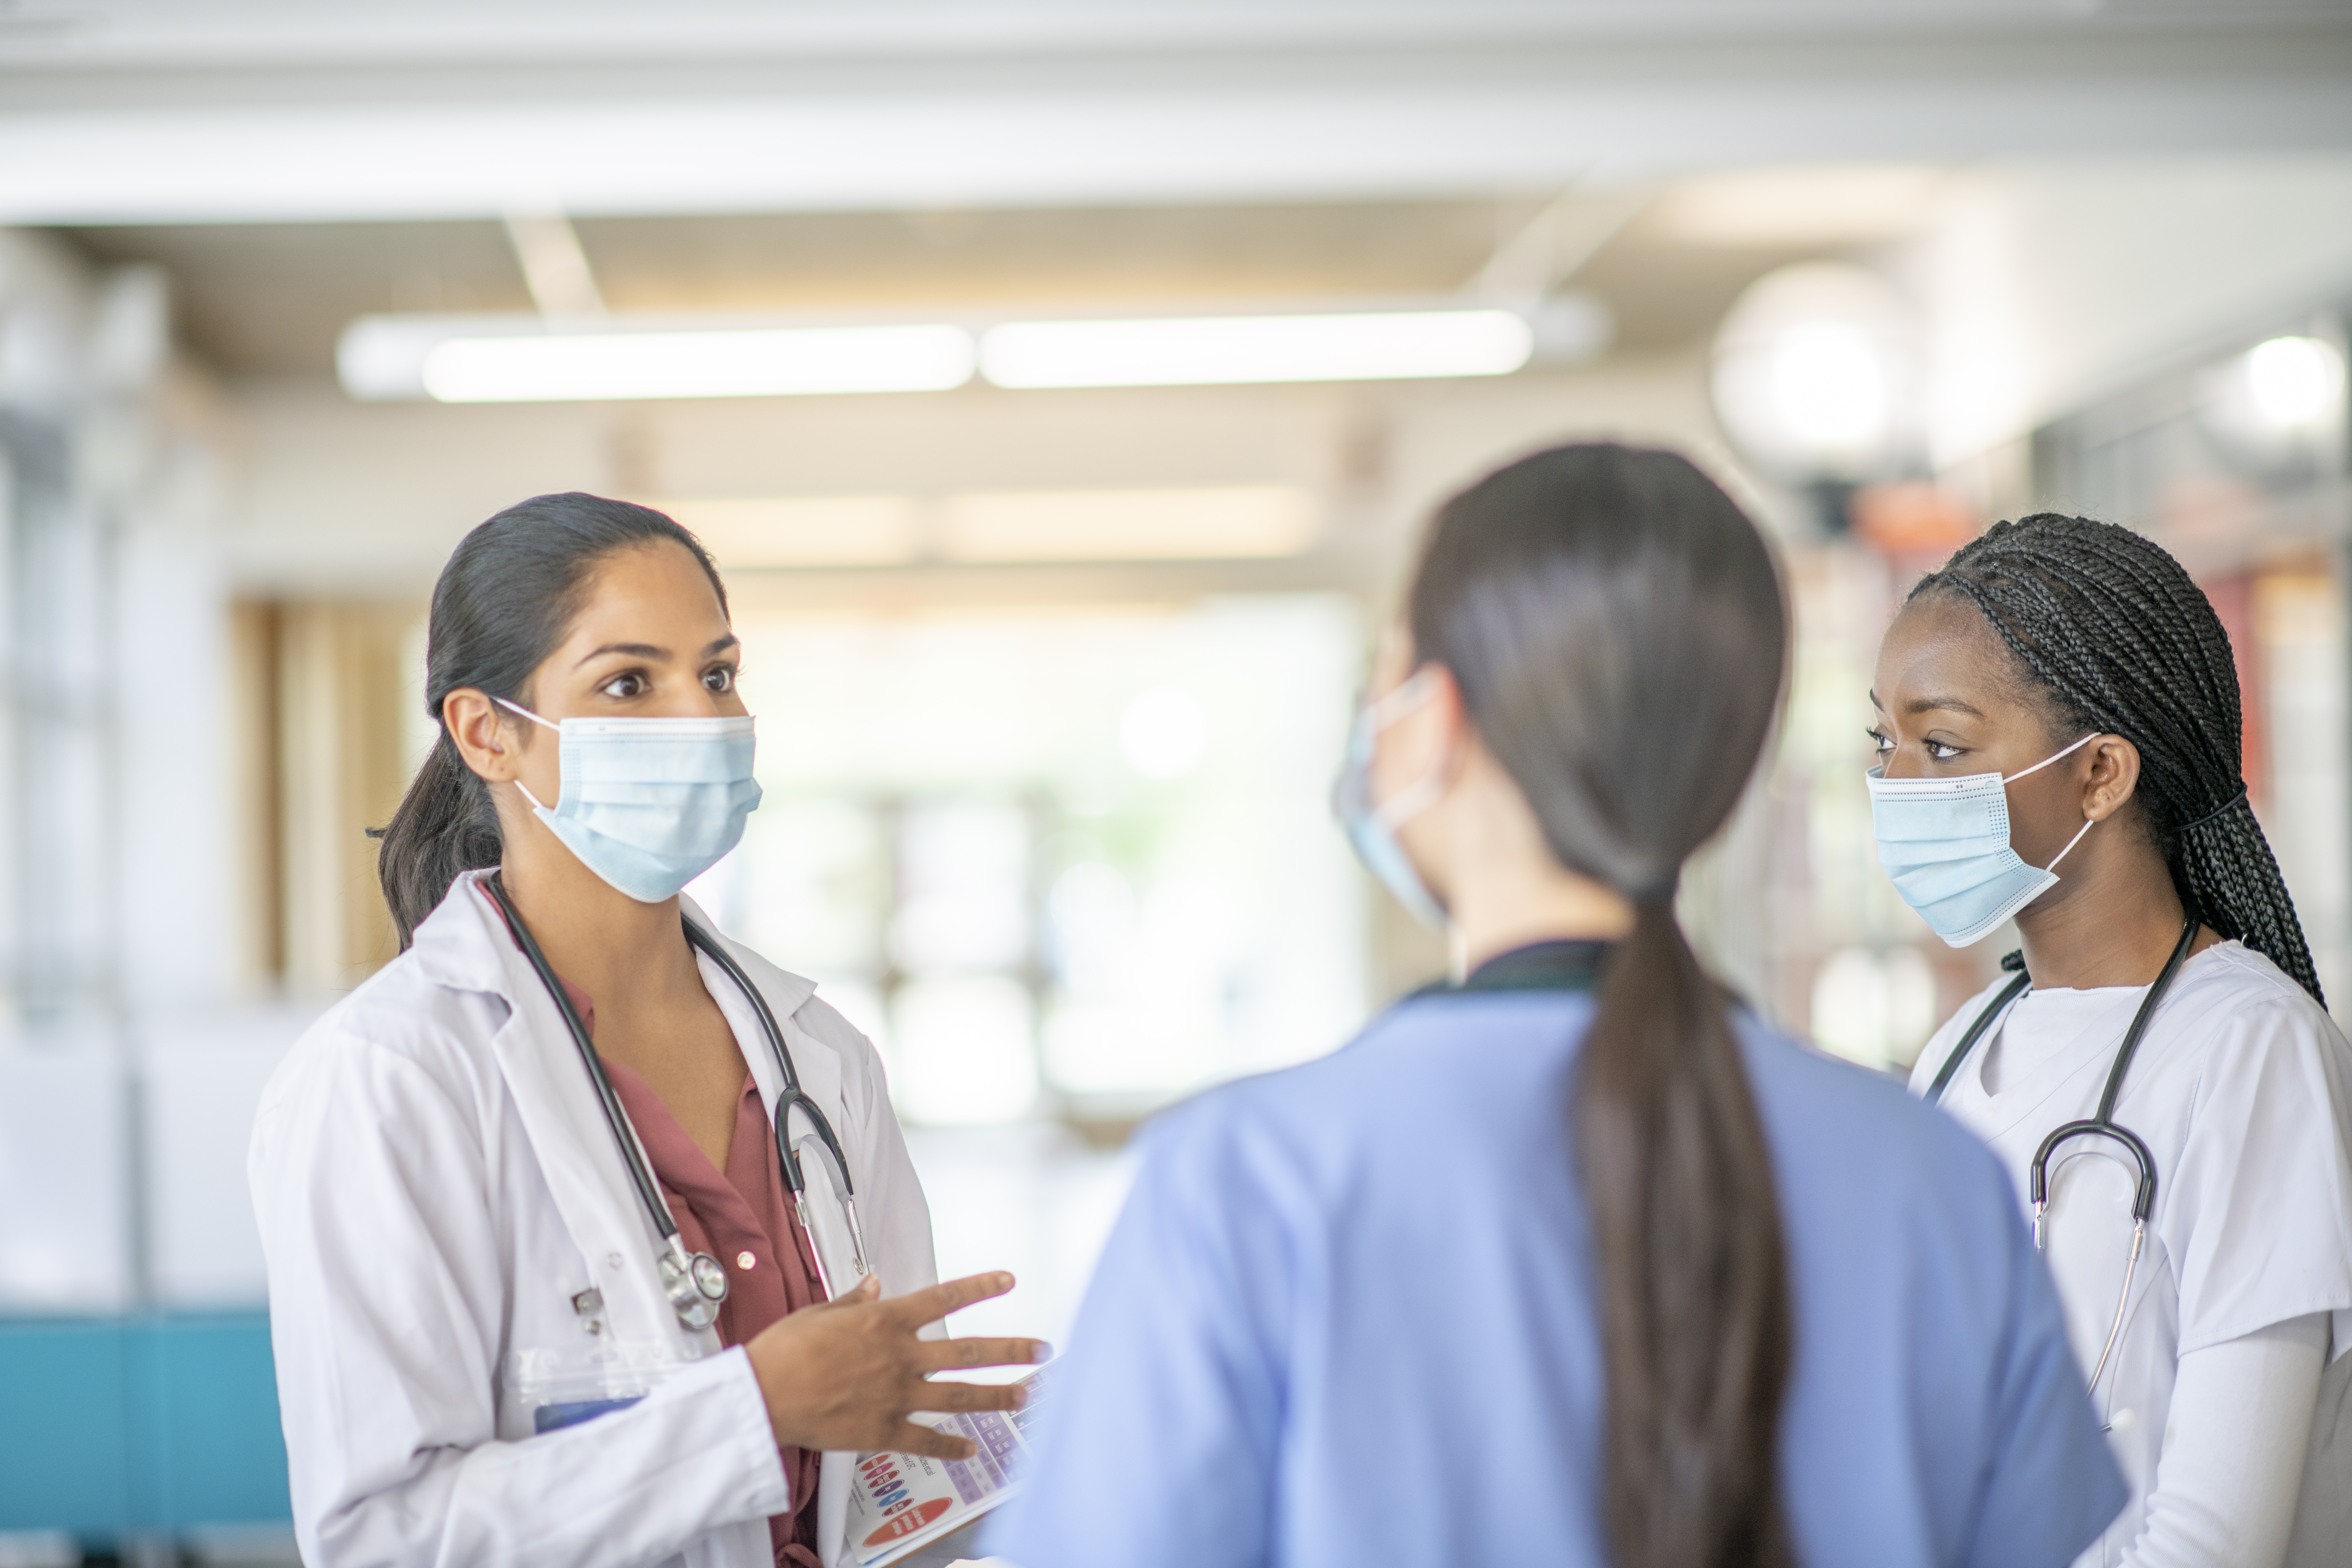 Trois jeunes travailleuses de la santé portant un masque se concertent dans un hôpital.